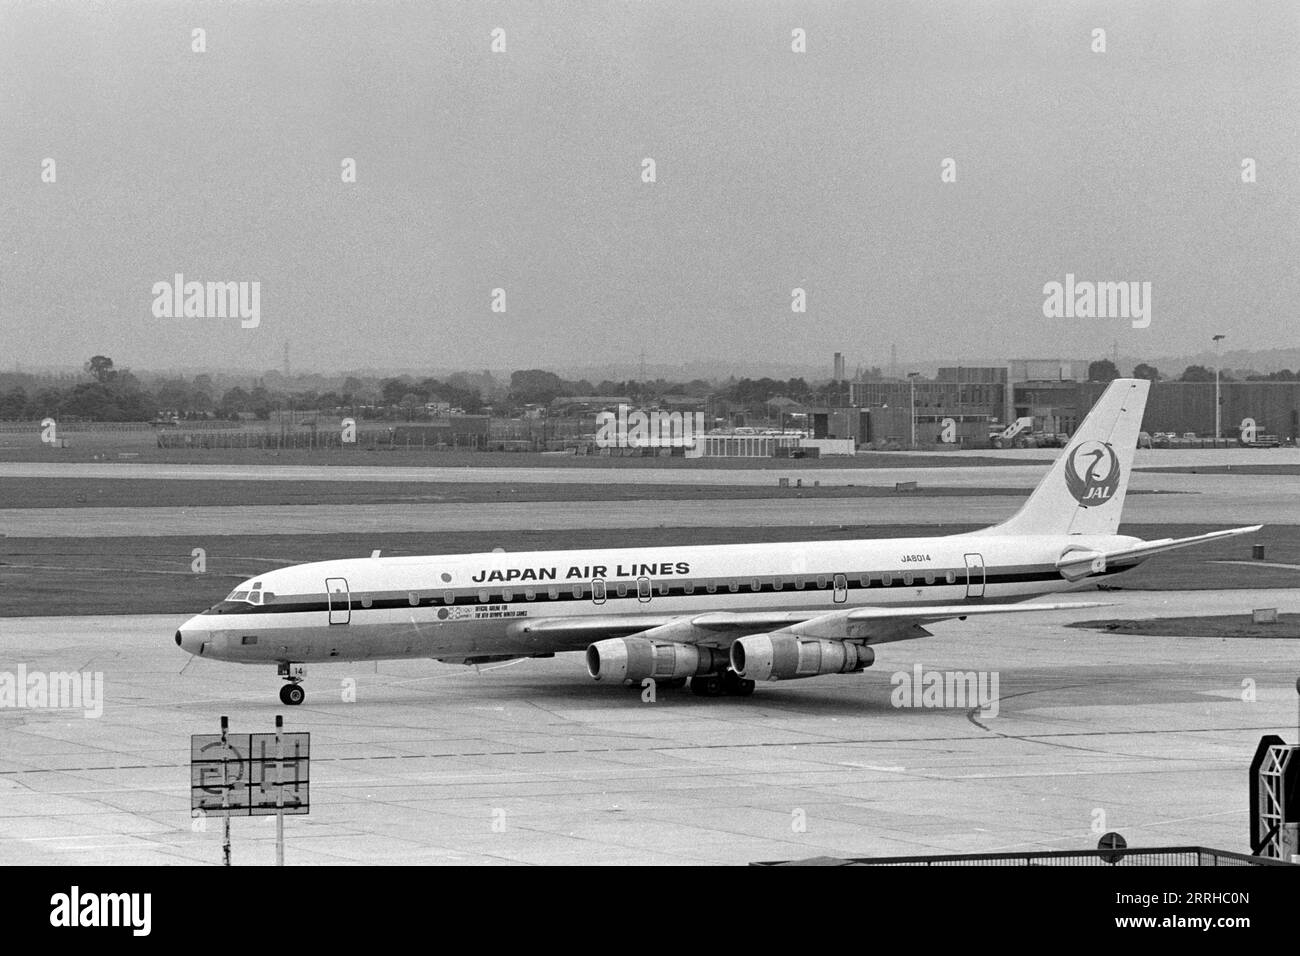 Japan Airlines Douglas DC-8, vue latérale de JA 8014, roulage à l'aéroport de Heathrow, Londres, Angleterre 1971 Banque D'Images